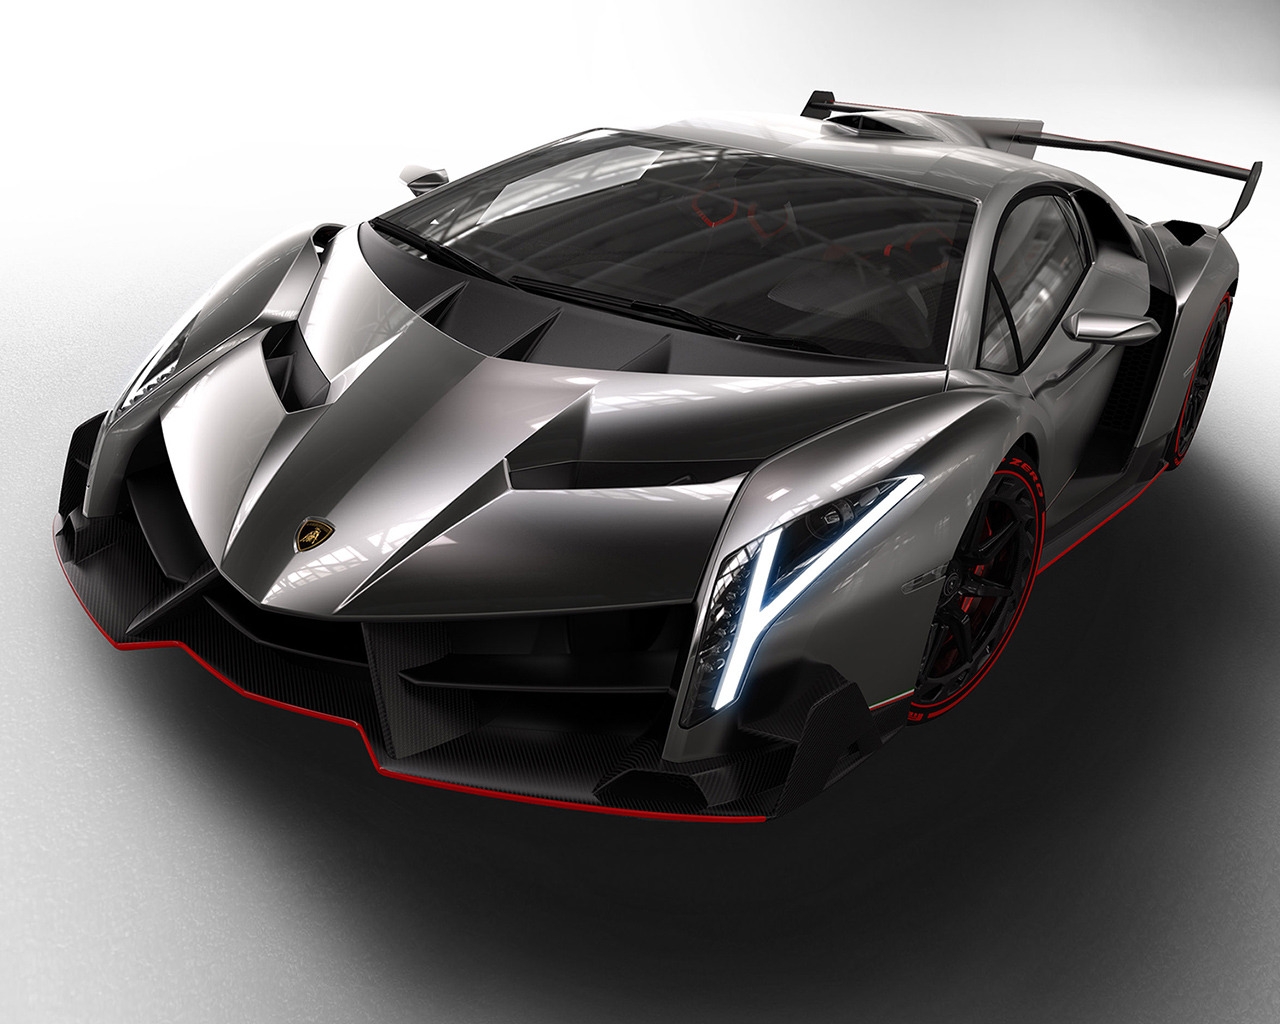 Lamborghini Veneno Studio for 1280 x 1024 resolution